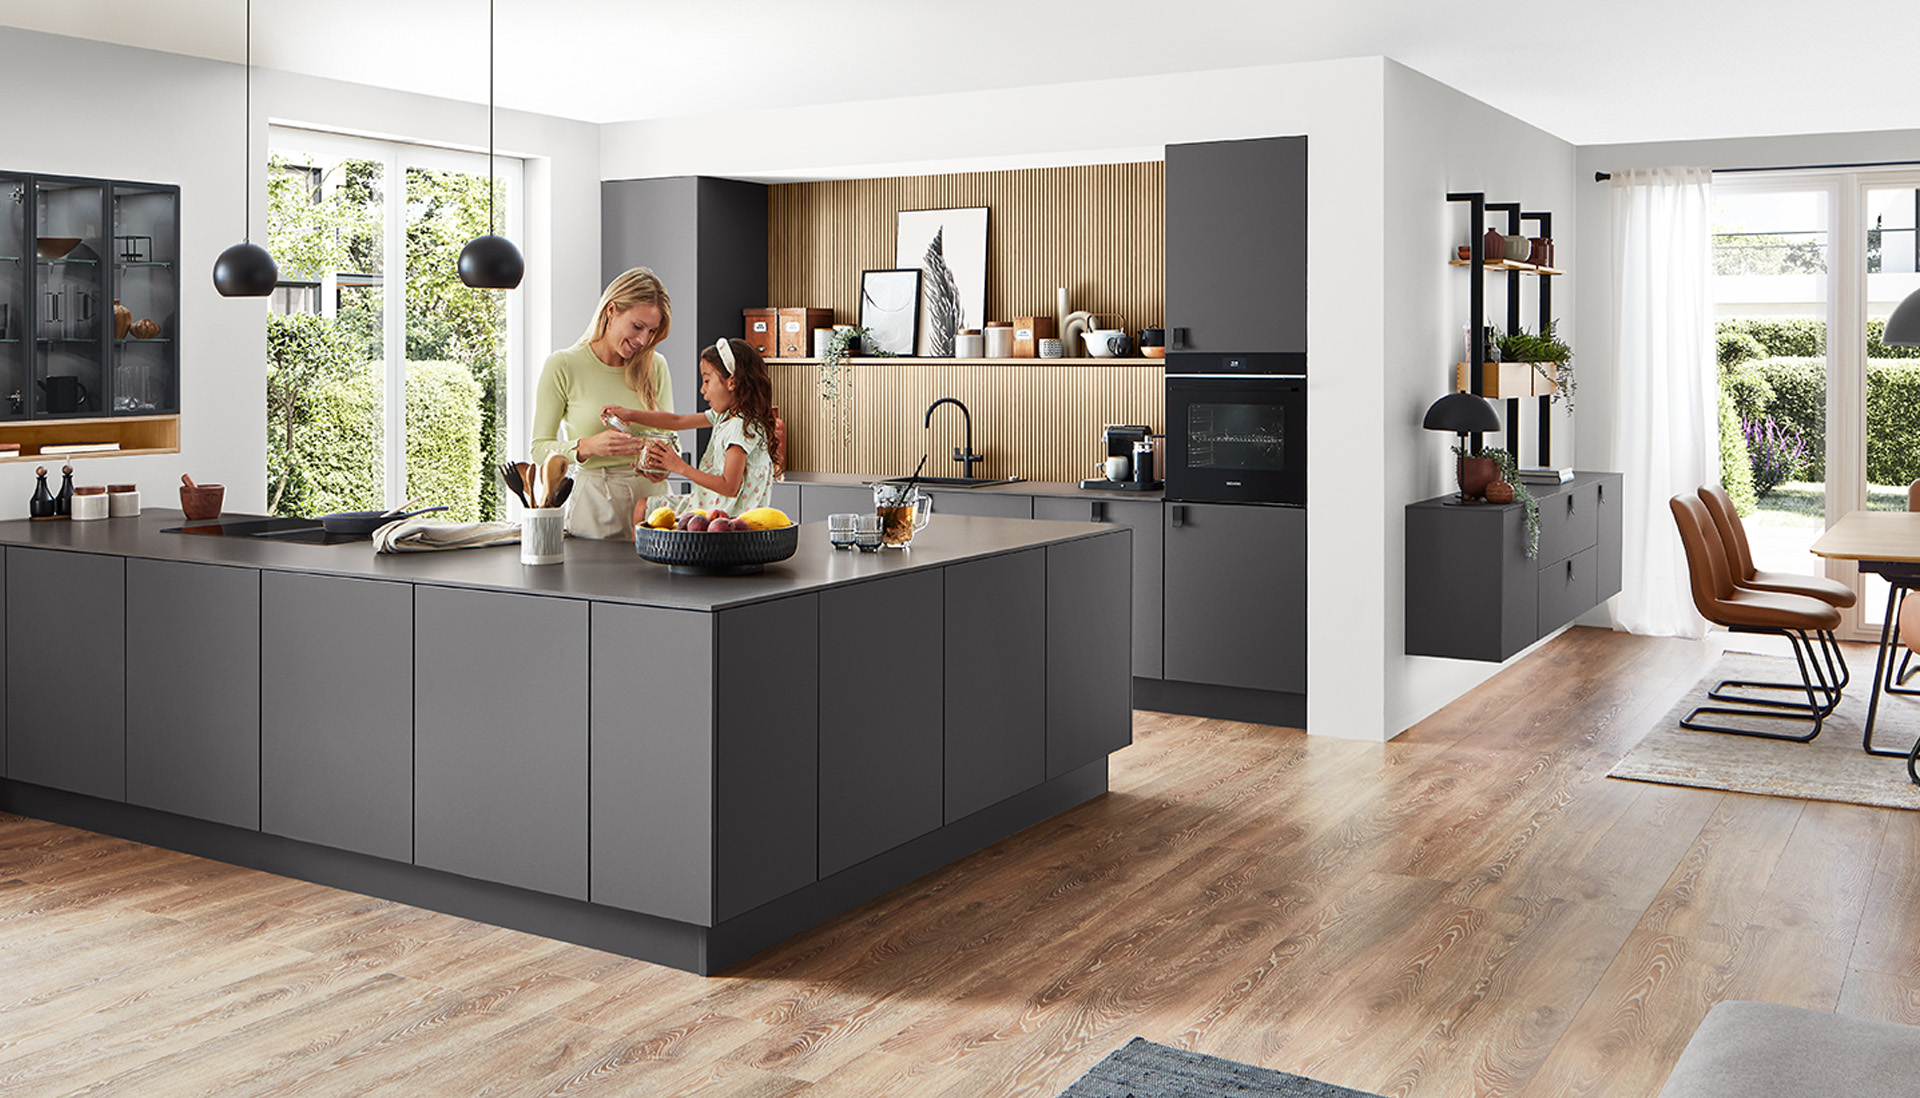 Moderne ruime keuken met een stijlvol ontwerp, voorzien van een centraal eiland, geïntegreerde apparaten en een gezin dat samen geniet van een kookactiviteit.